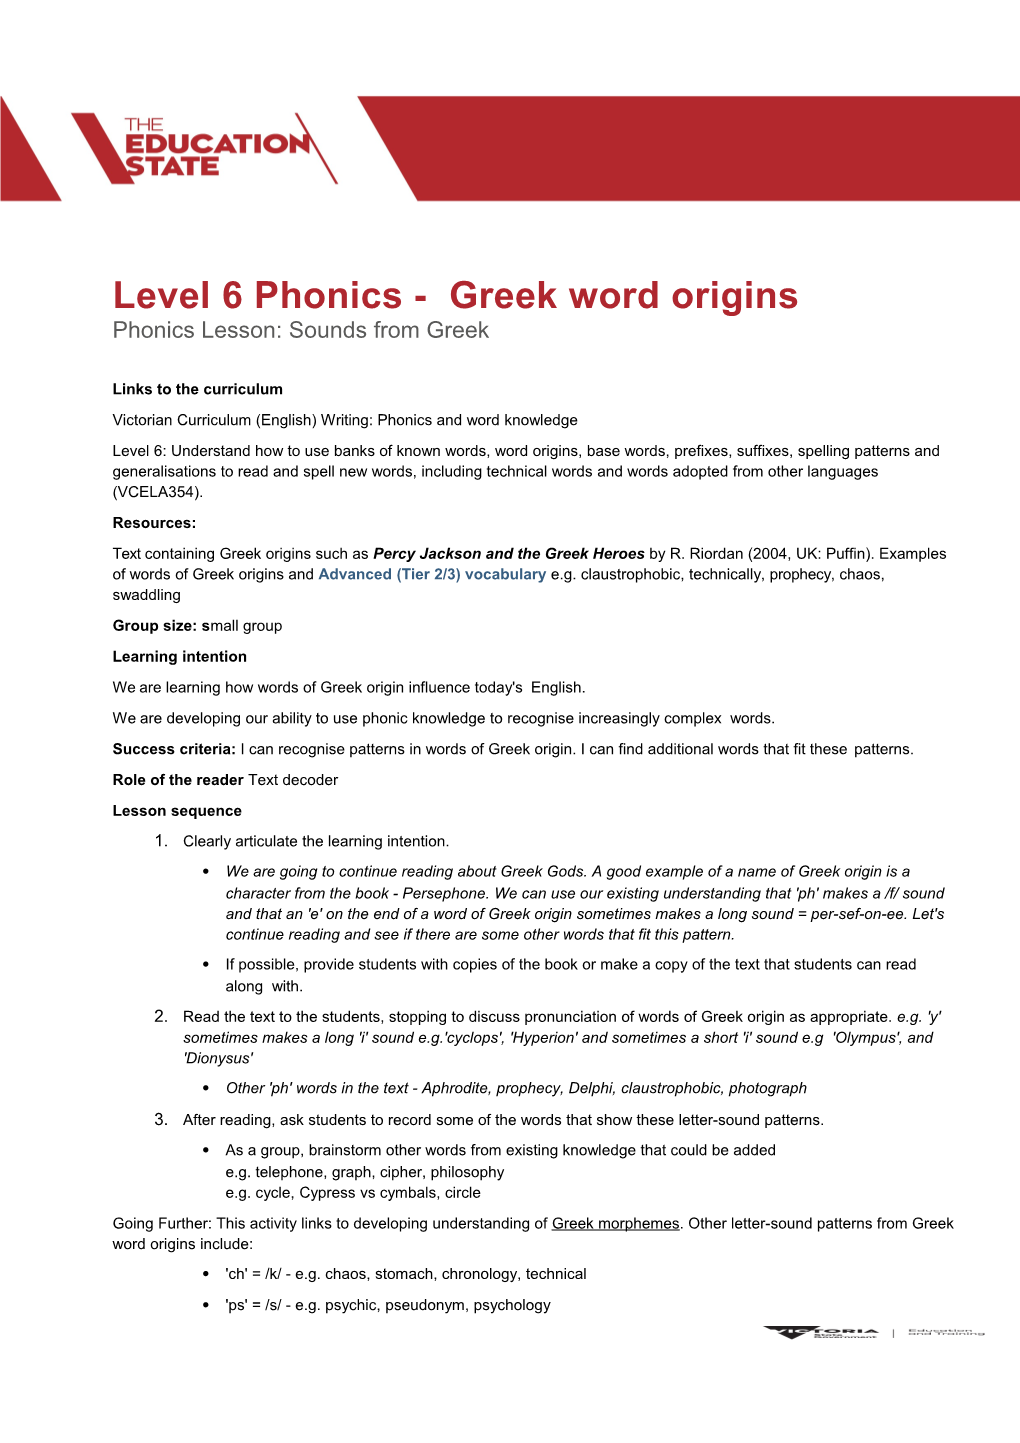 Level 6 Phonics - Greek Word Origins